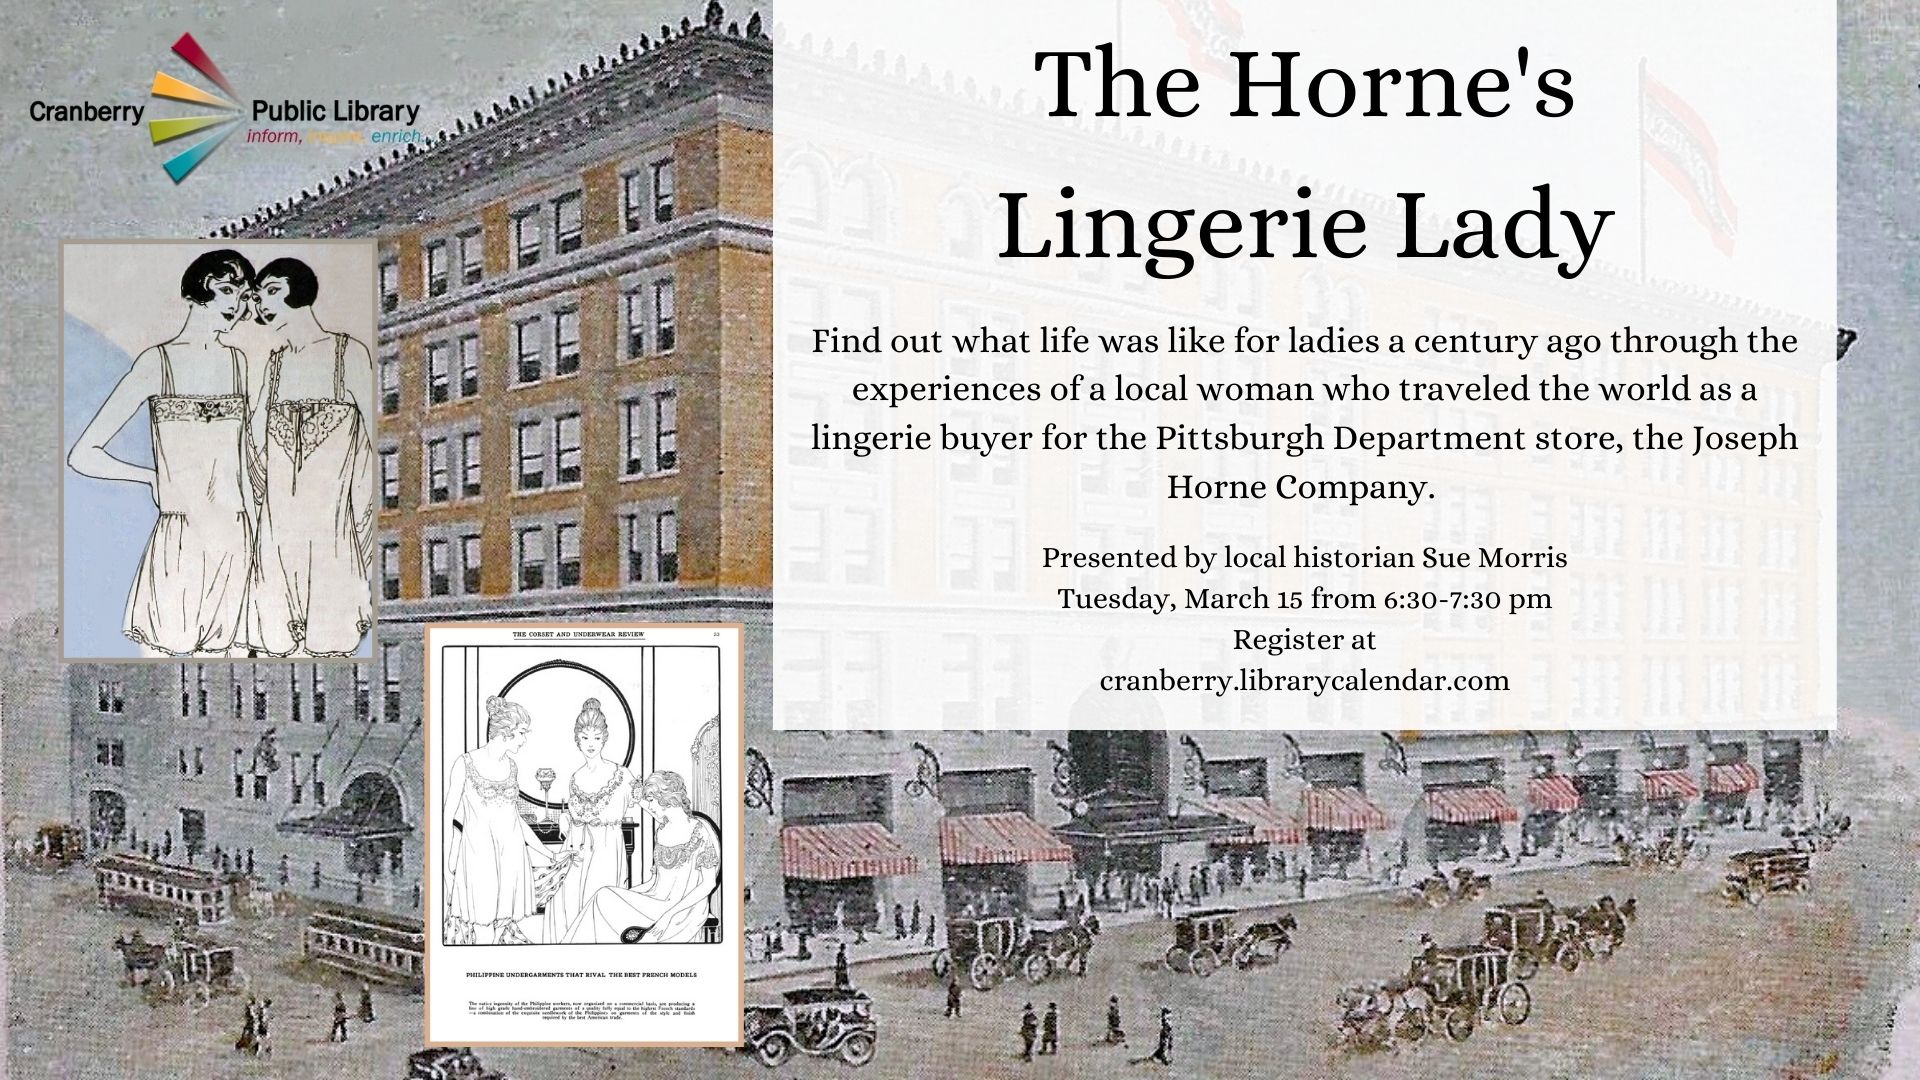 Flyer for the Horne's Lingerie Lady program